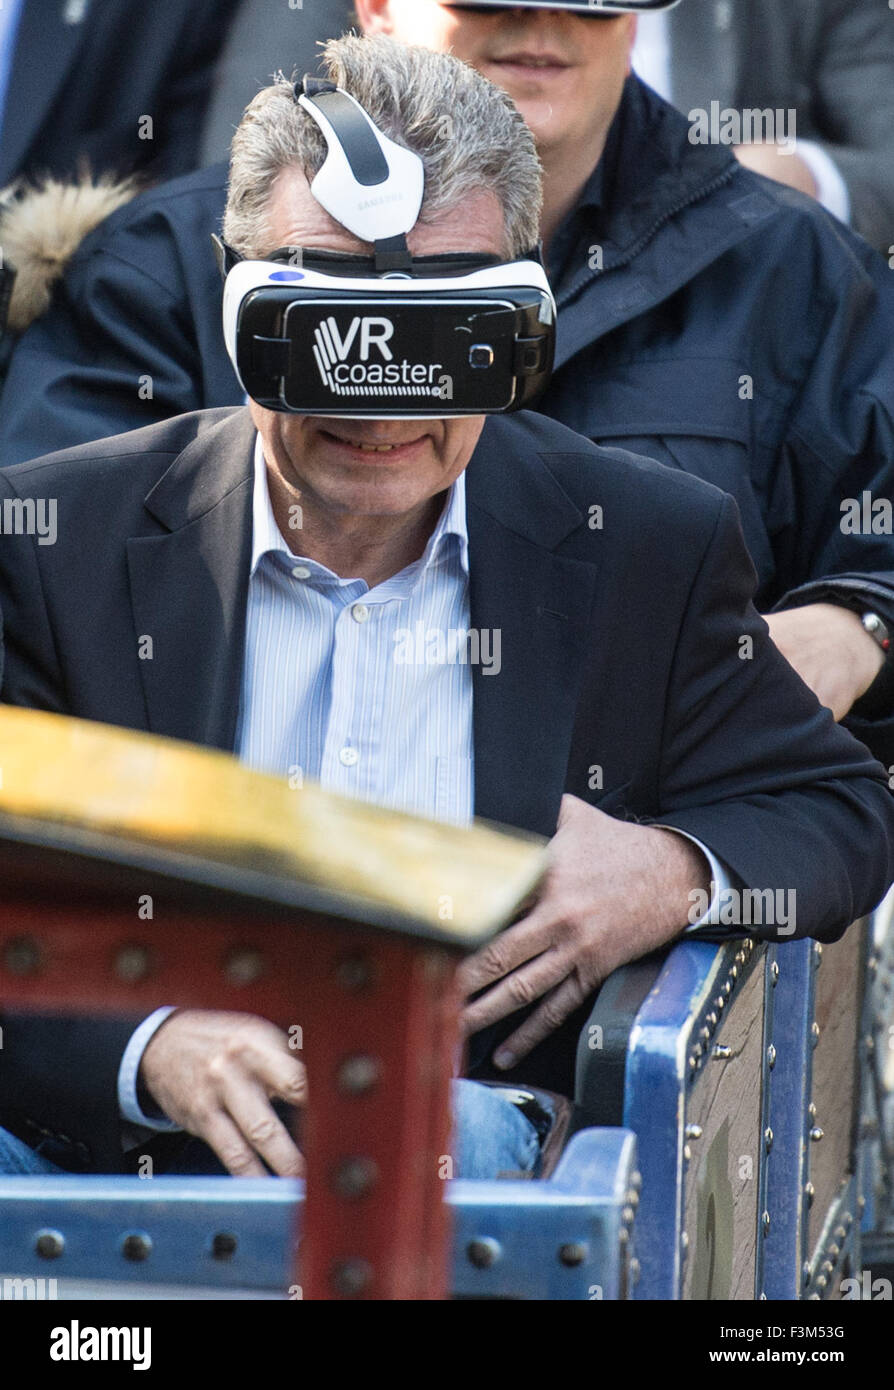 Rust, Deutschland. 9. Oktober 2015. Günther Oettinger (CDU), EU-Kommissar für die Digitalwirtschaft und Gesellschaft mit Virtual Reality (VR) Brille von Oculus im Europa-Park in Rust, Deutschland, 9. Oktober 2015. In der VR können Schutzbrillen neuen virtuellen Welten in der Zukunft erstellt werden. Der Träger dann bewegt sich live in der Achterbahn 'Alpenexpress' aber hat visuell erlebt neue virtuelle Welten Foto: PATRICK SEEGER/Dpa/Alamy Live News Stockfoto